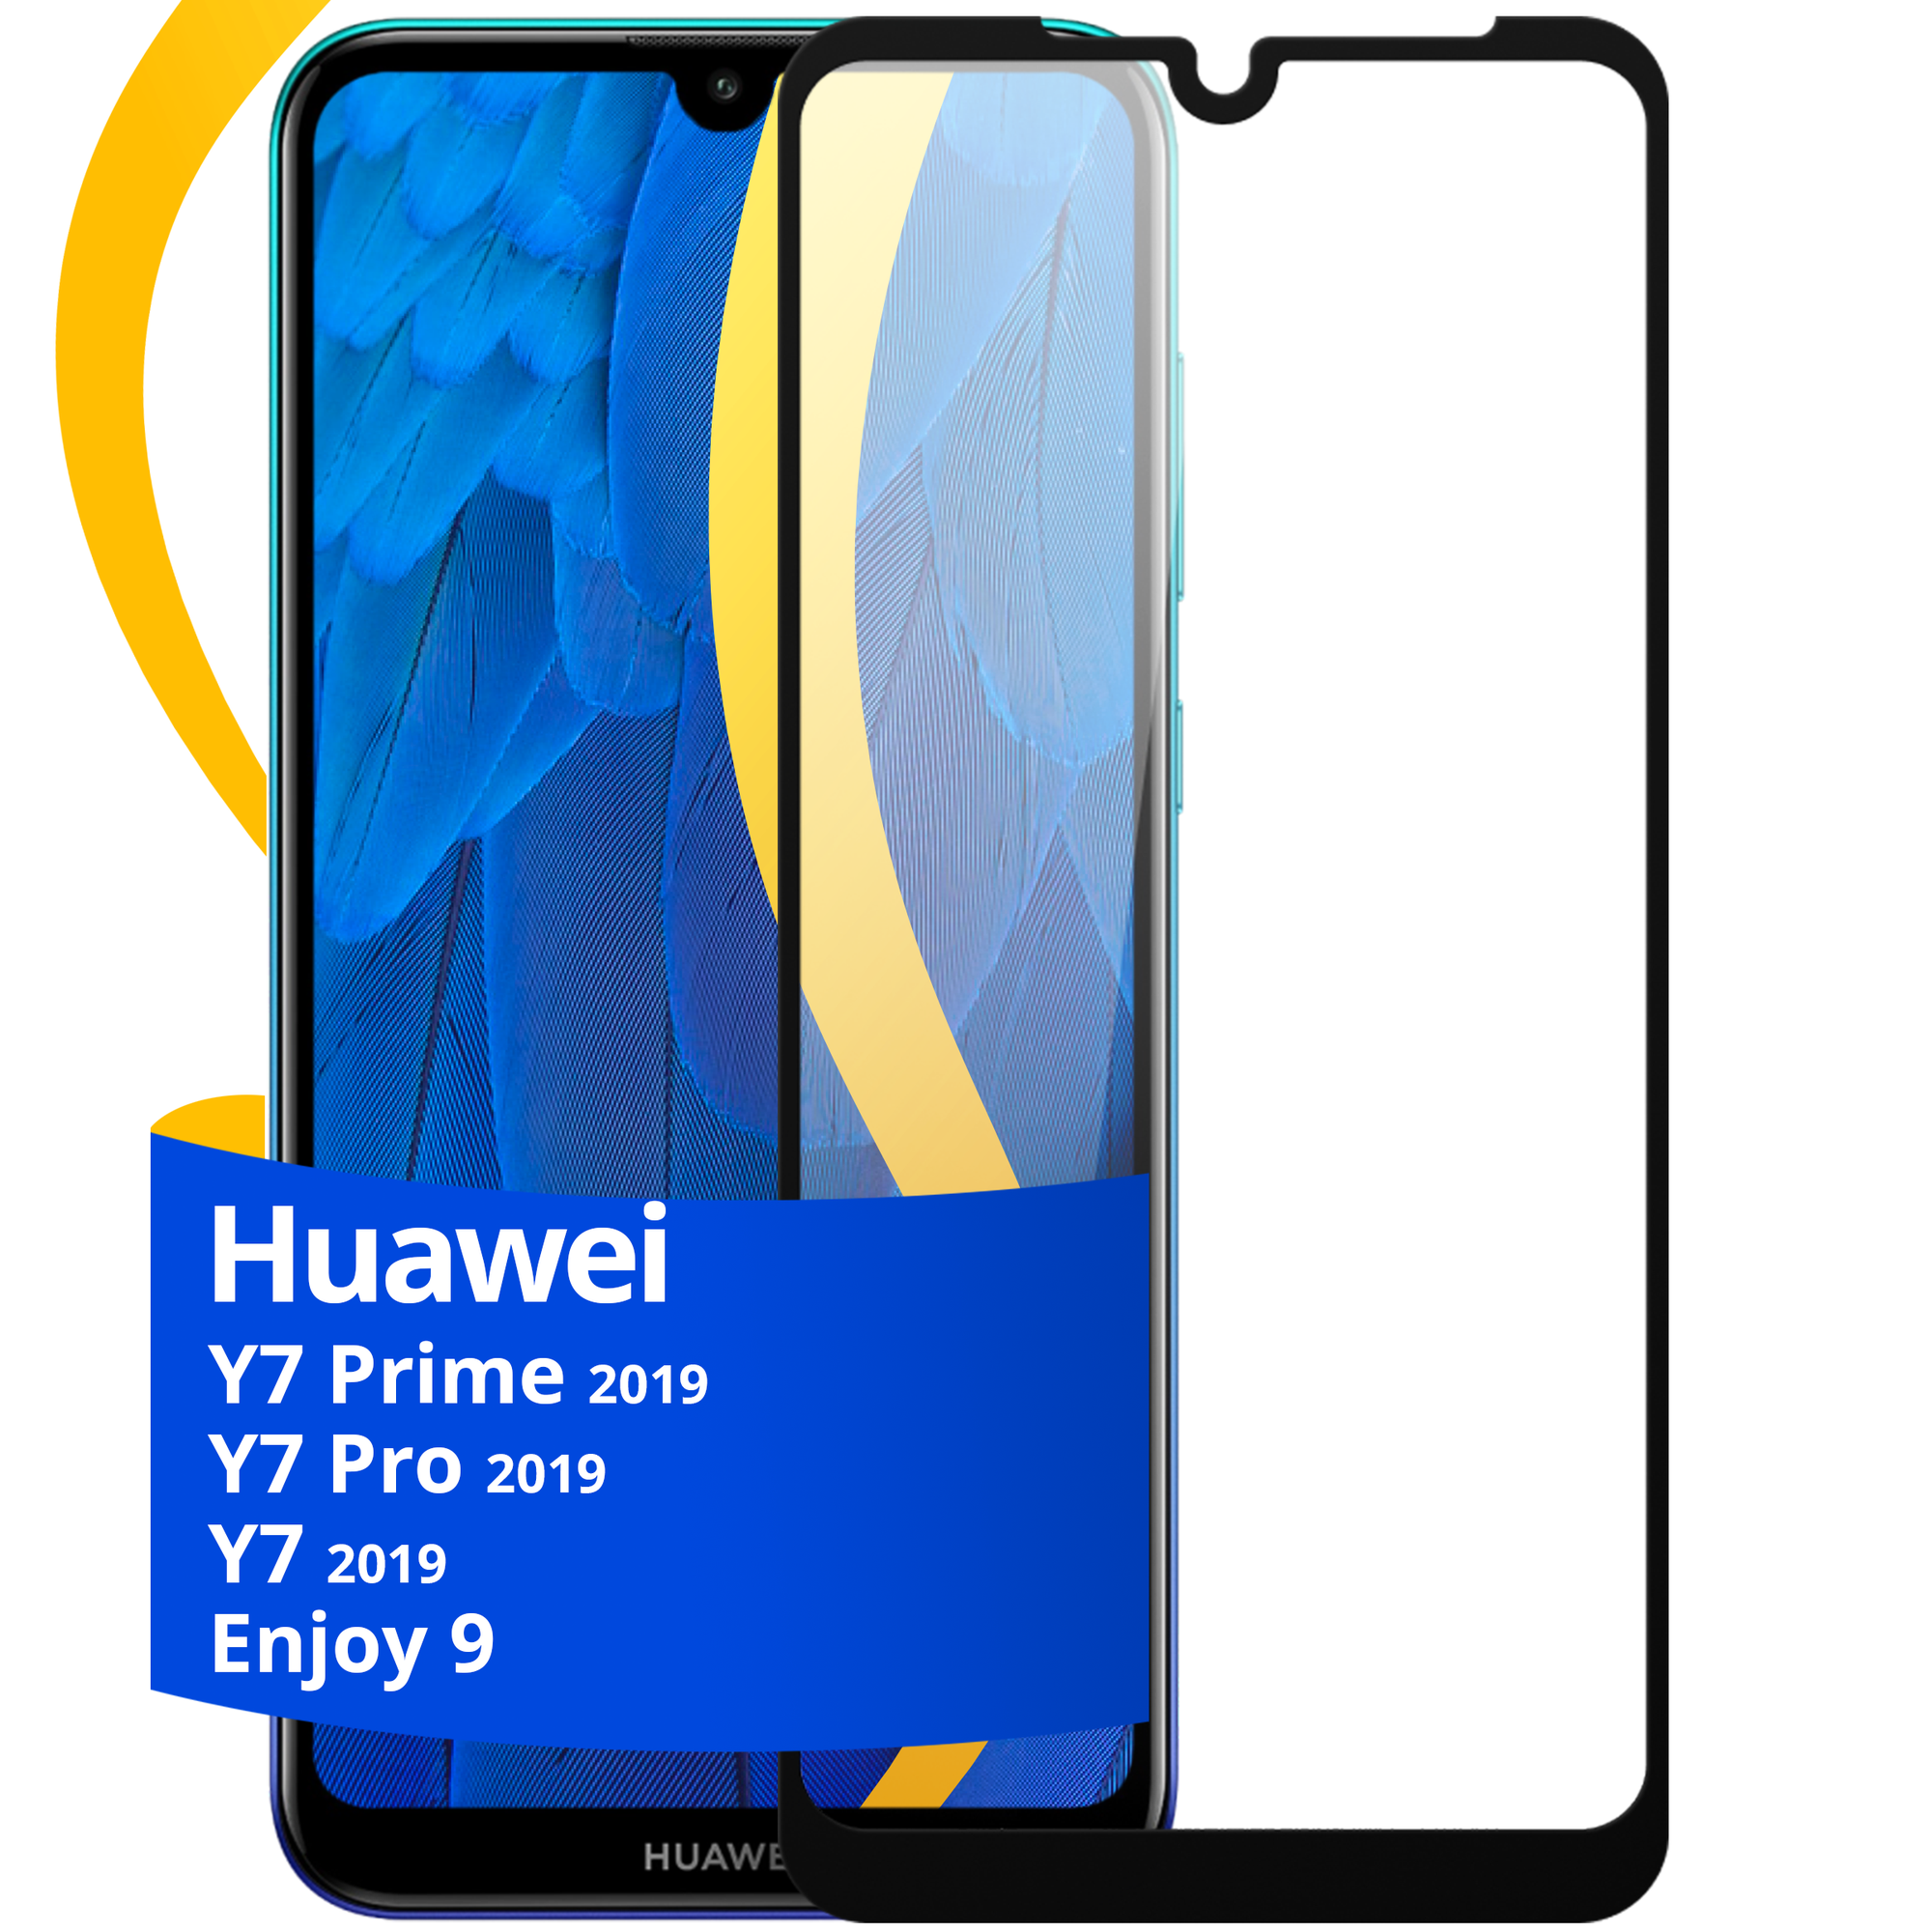 Глянцевое защитное стекло для телефона Huawei Y7, Y7 Prime, Y7 Pro 2019 и Enjoy 9 / Противоударное стекло Хуавей У7, У7 Прайм, У7 Про 2019, Энджой 9